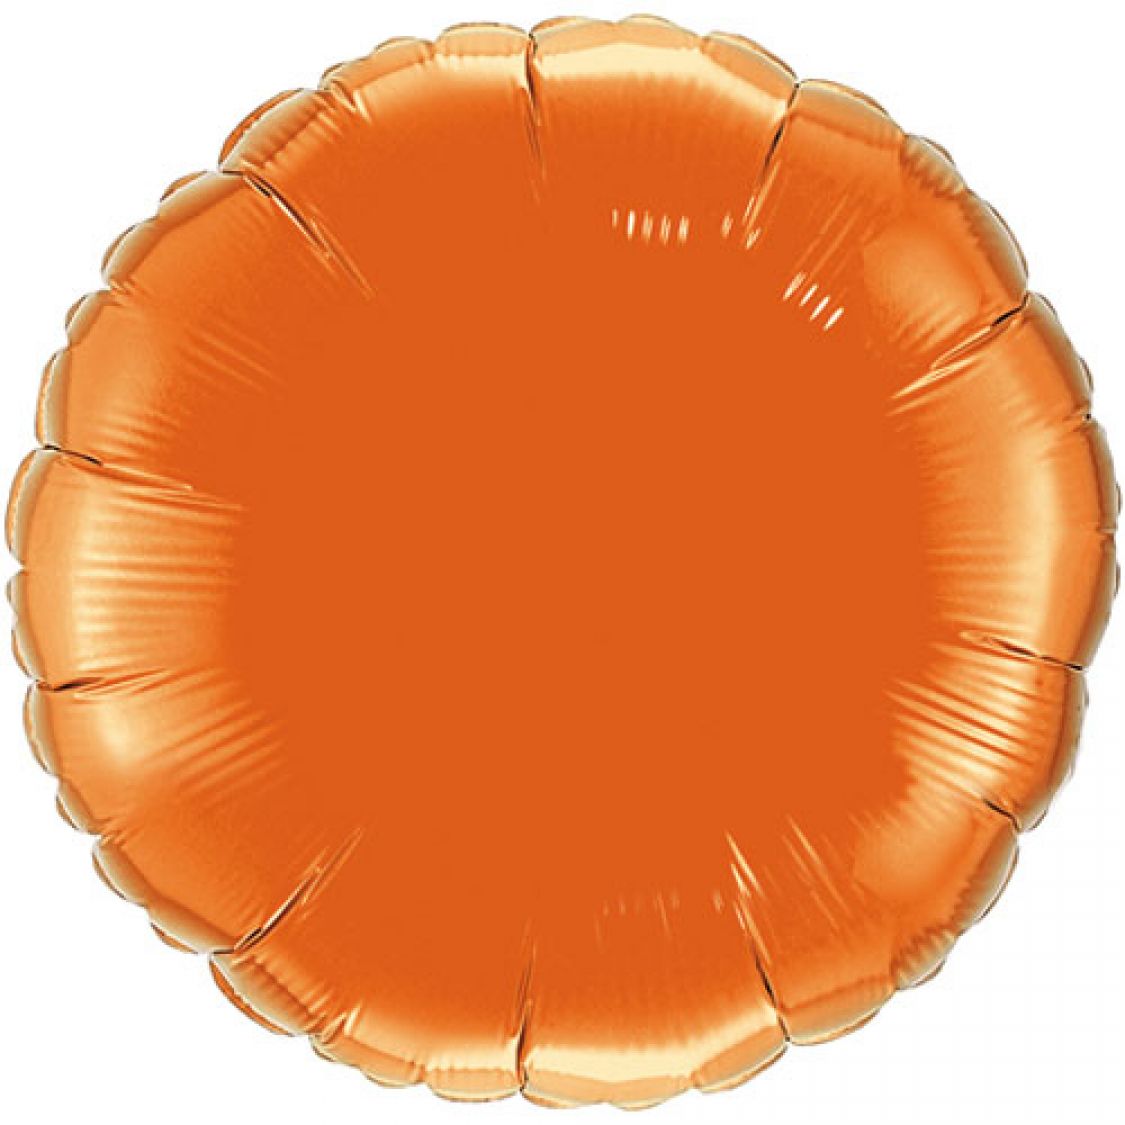 Ballon Mylar rond orange (orange)